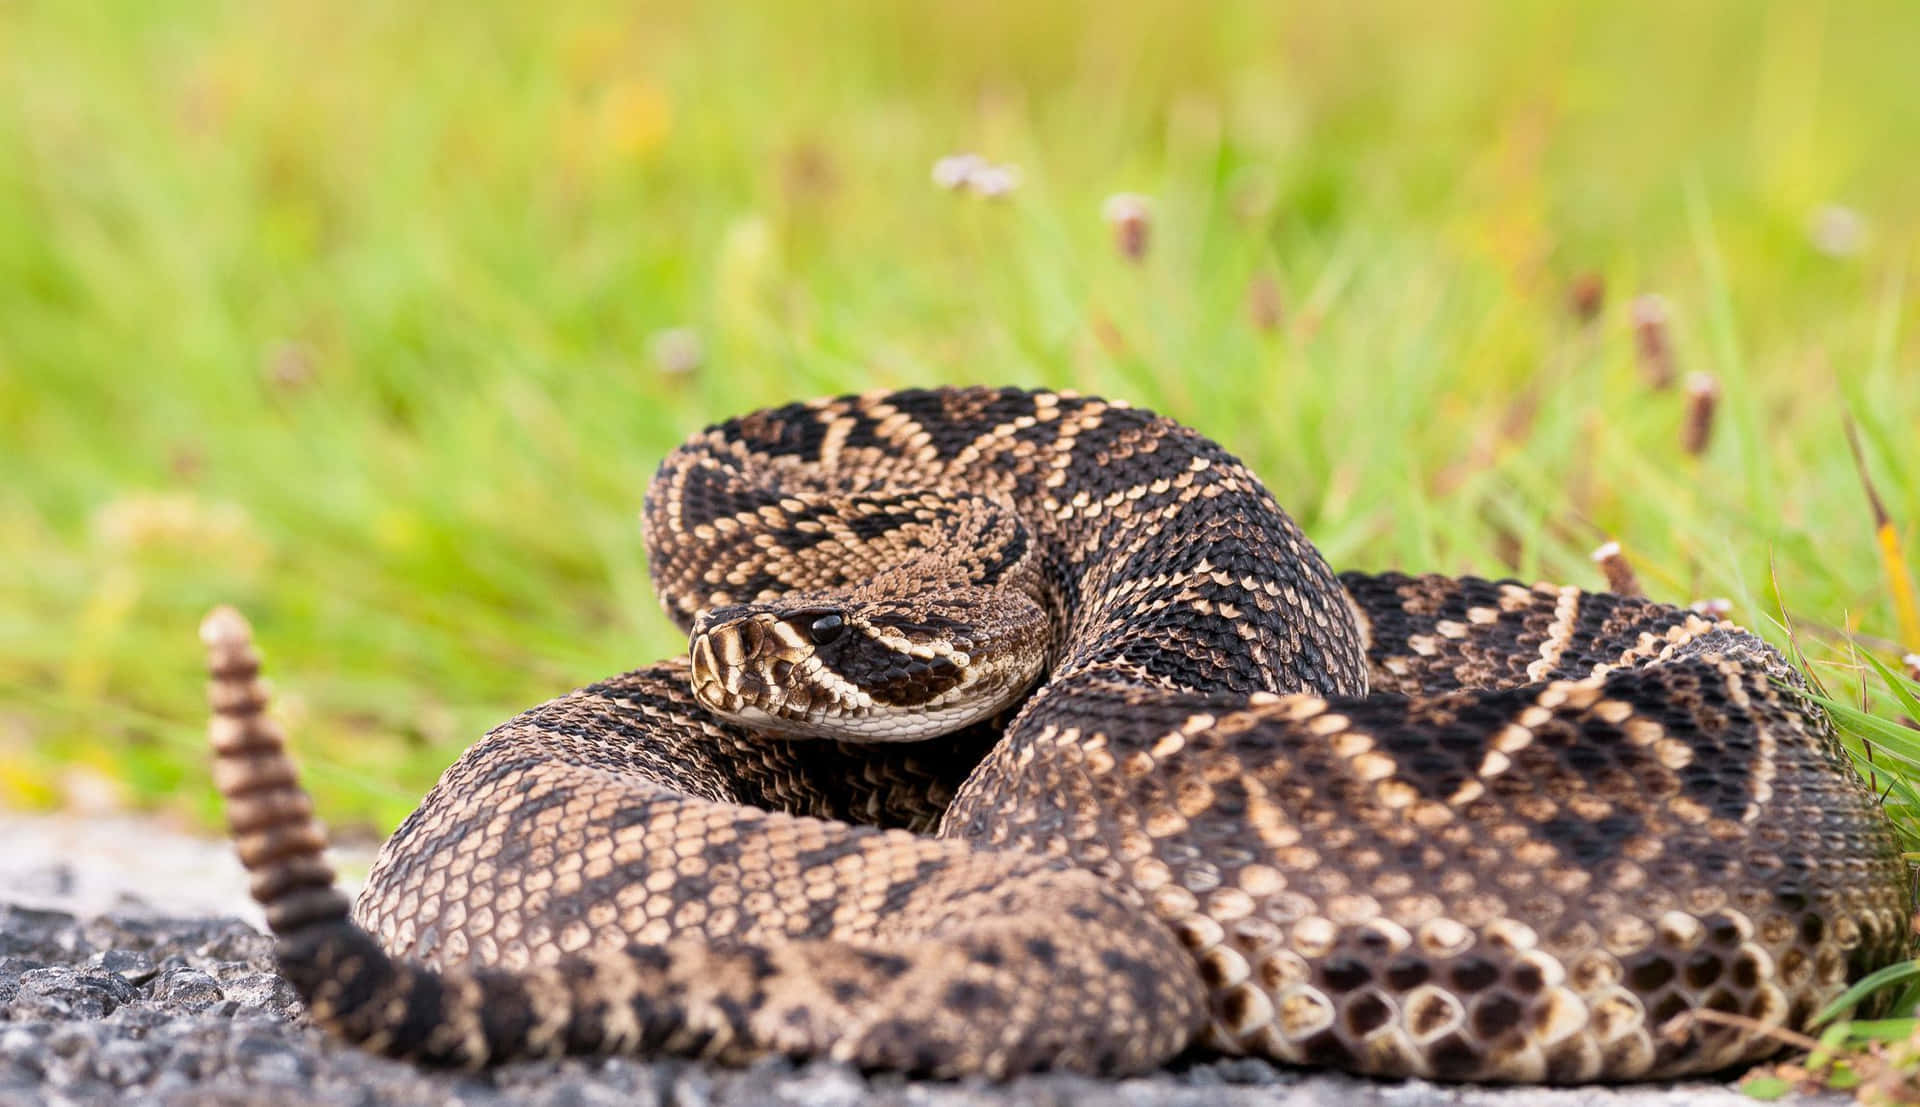 A rattlesnake lying camouflaged among rocks